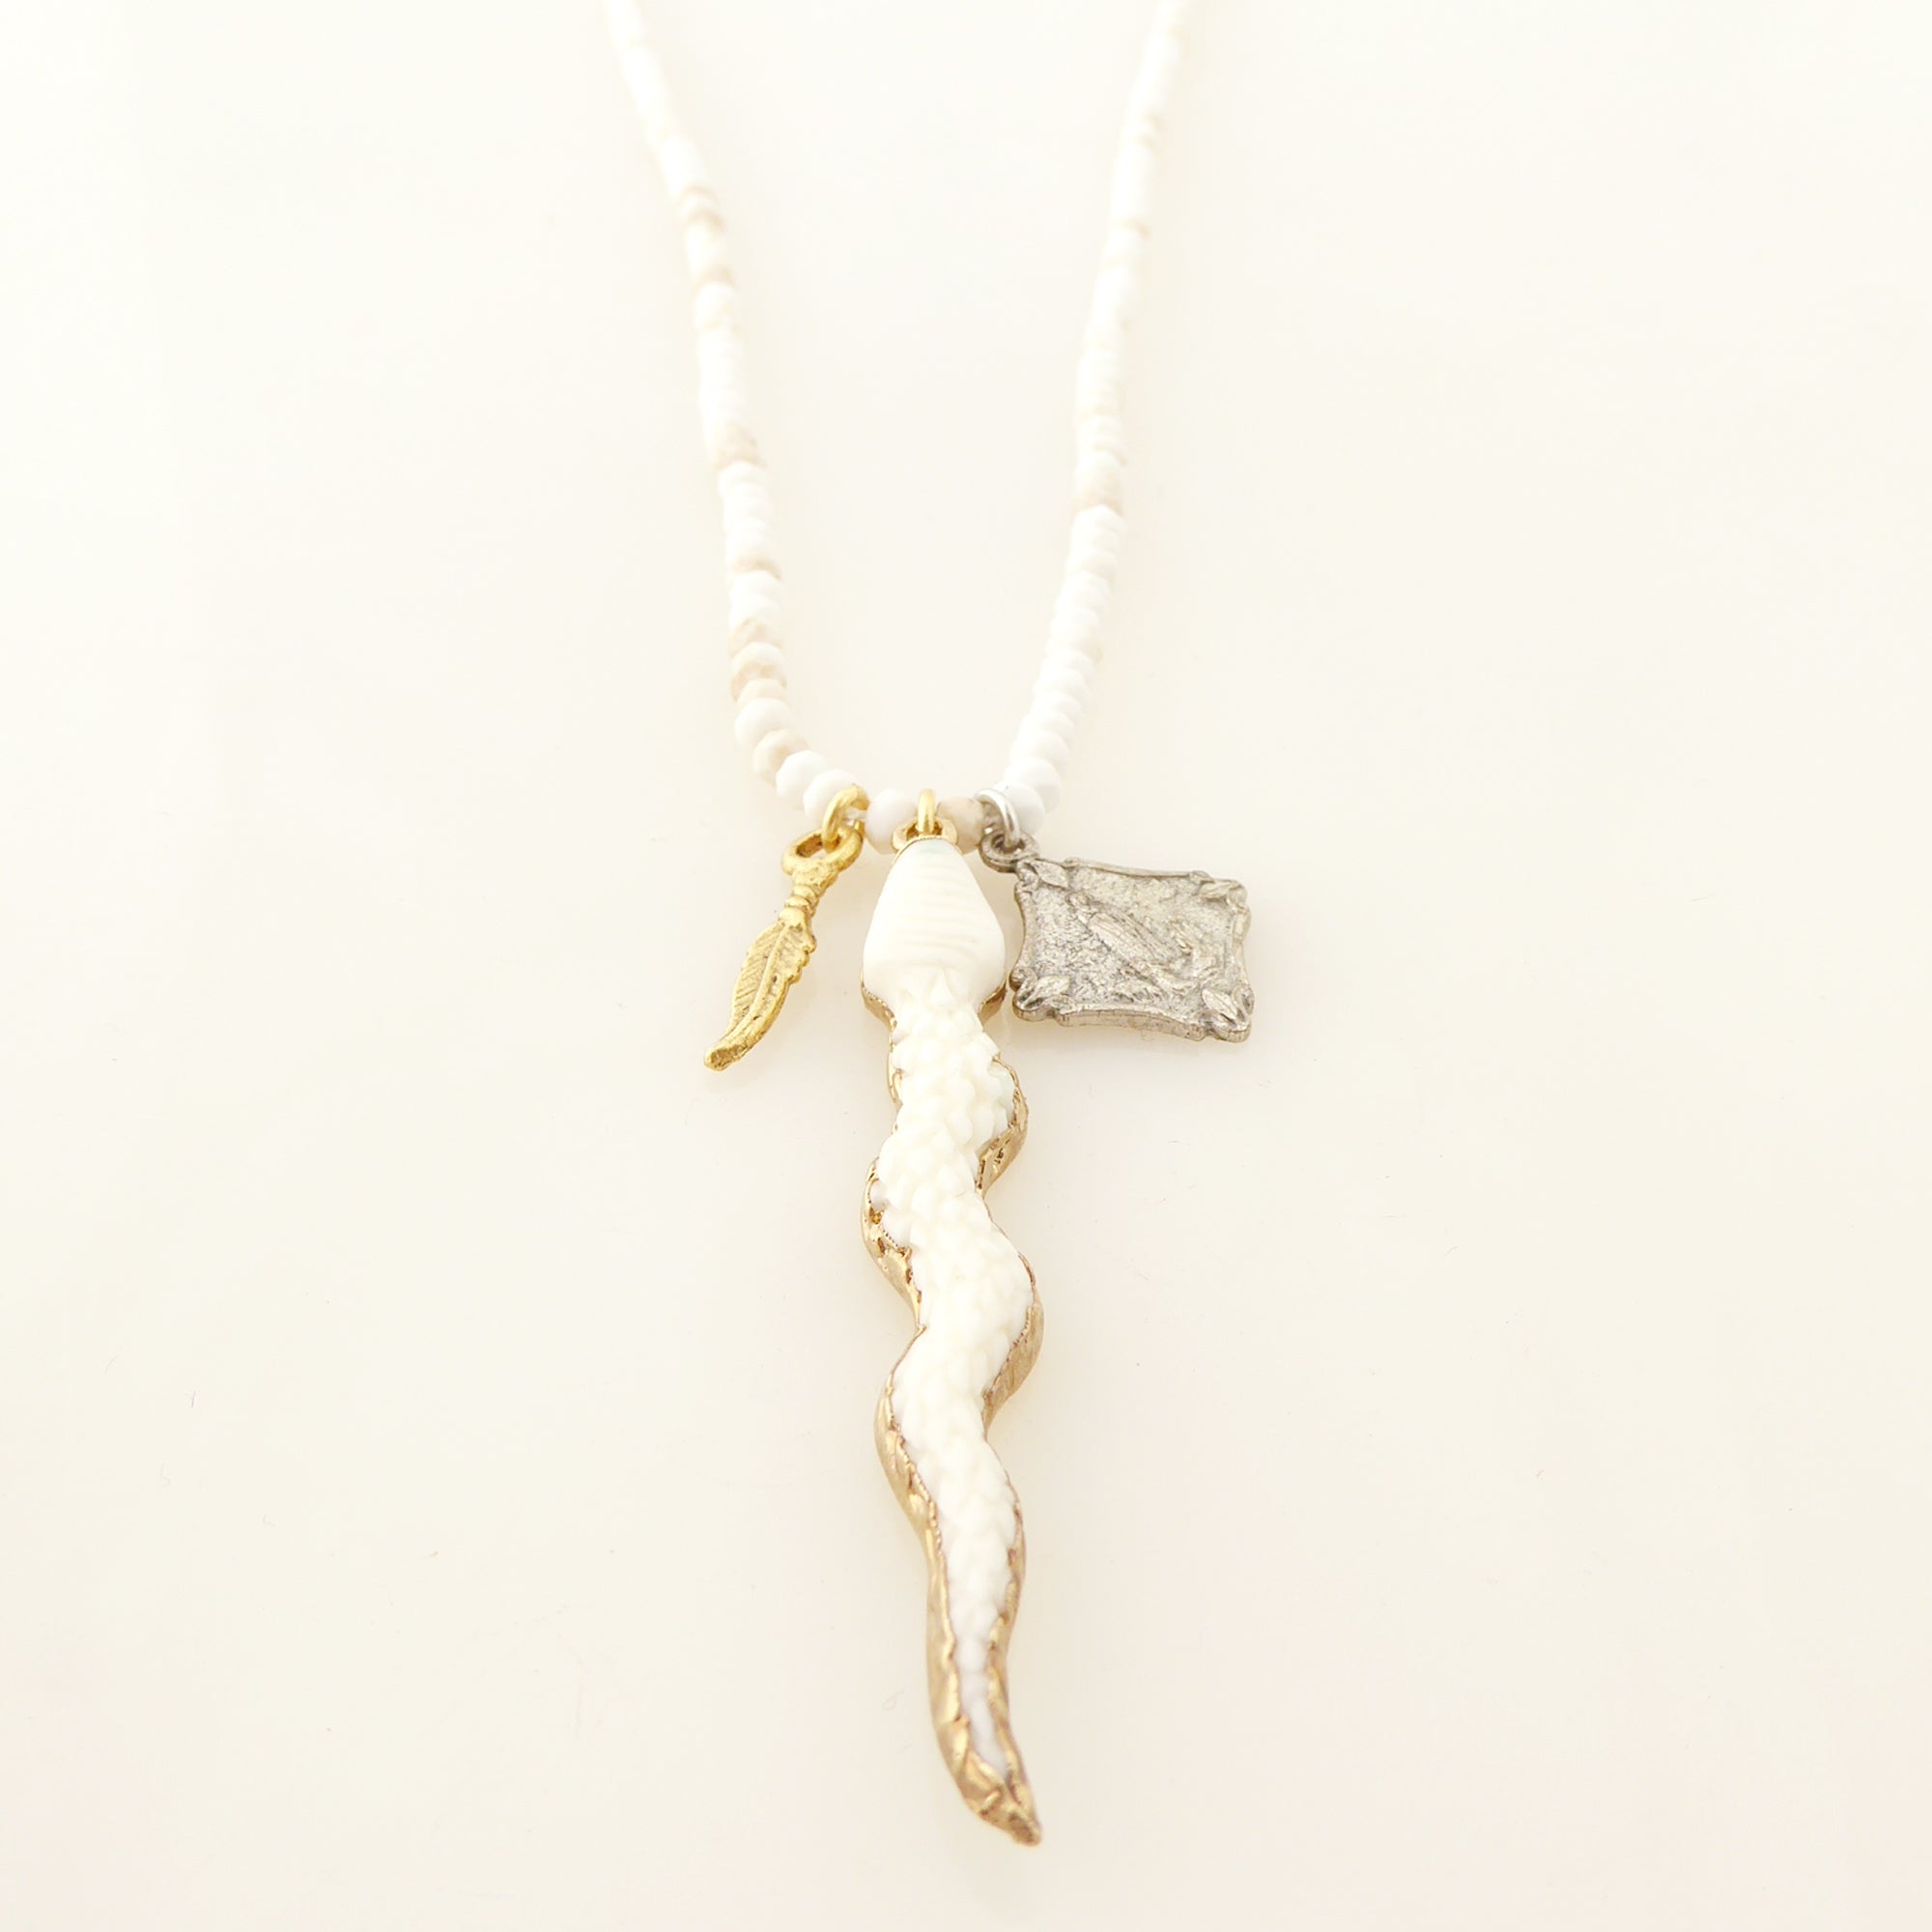 Carved snake pendant necklace by Jenny Dayco 3